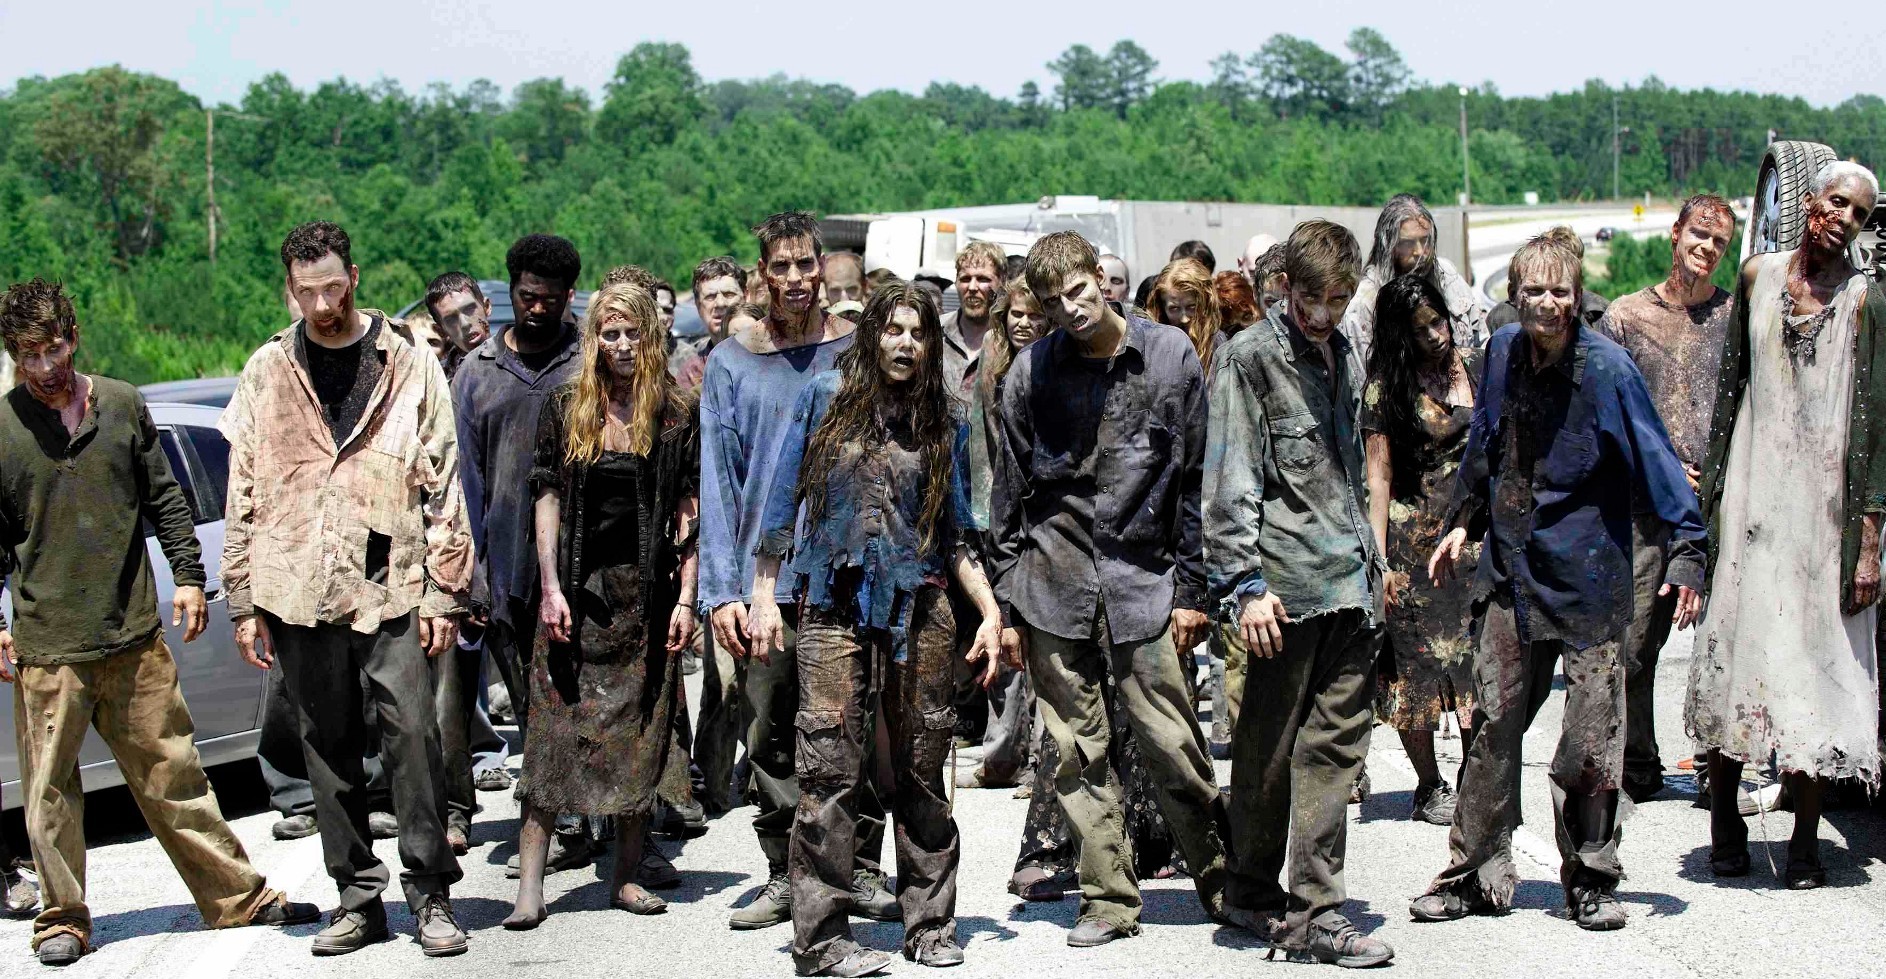 Snájdig zombicsapat a The Walking Dead egyik epizódjából. Fotó: AMC Studios